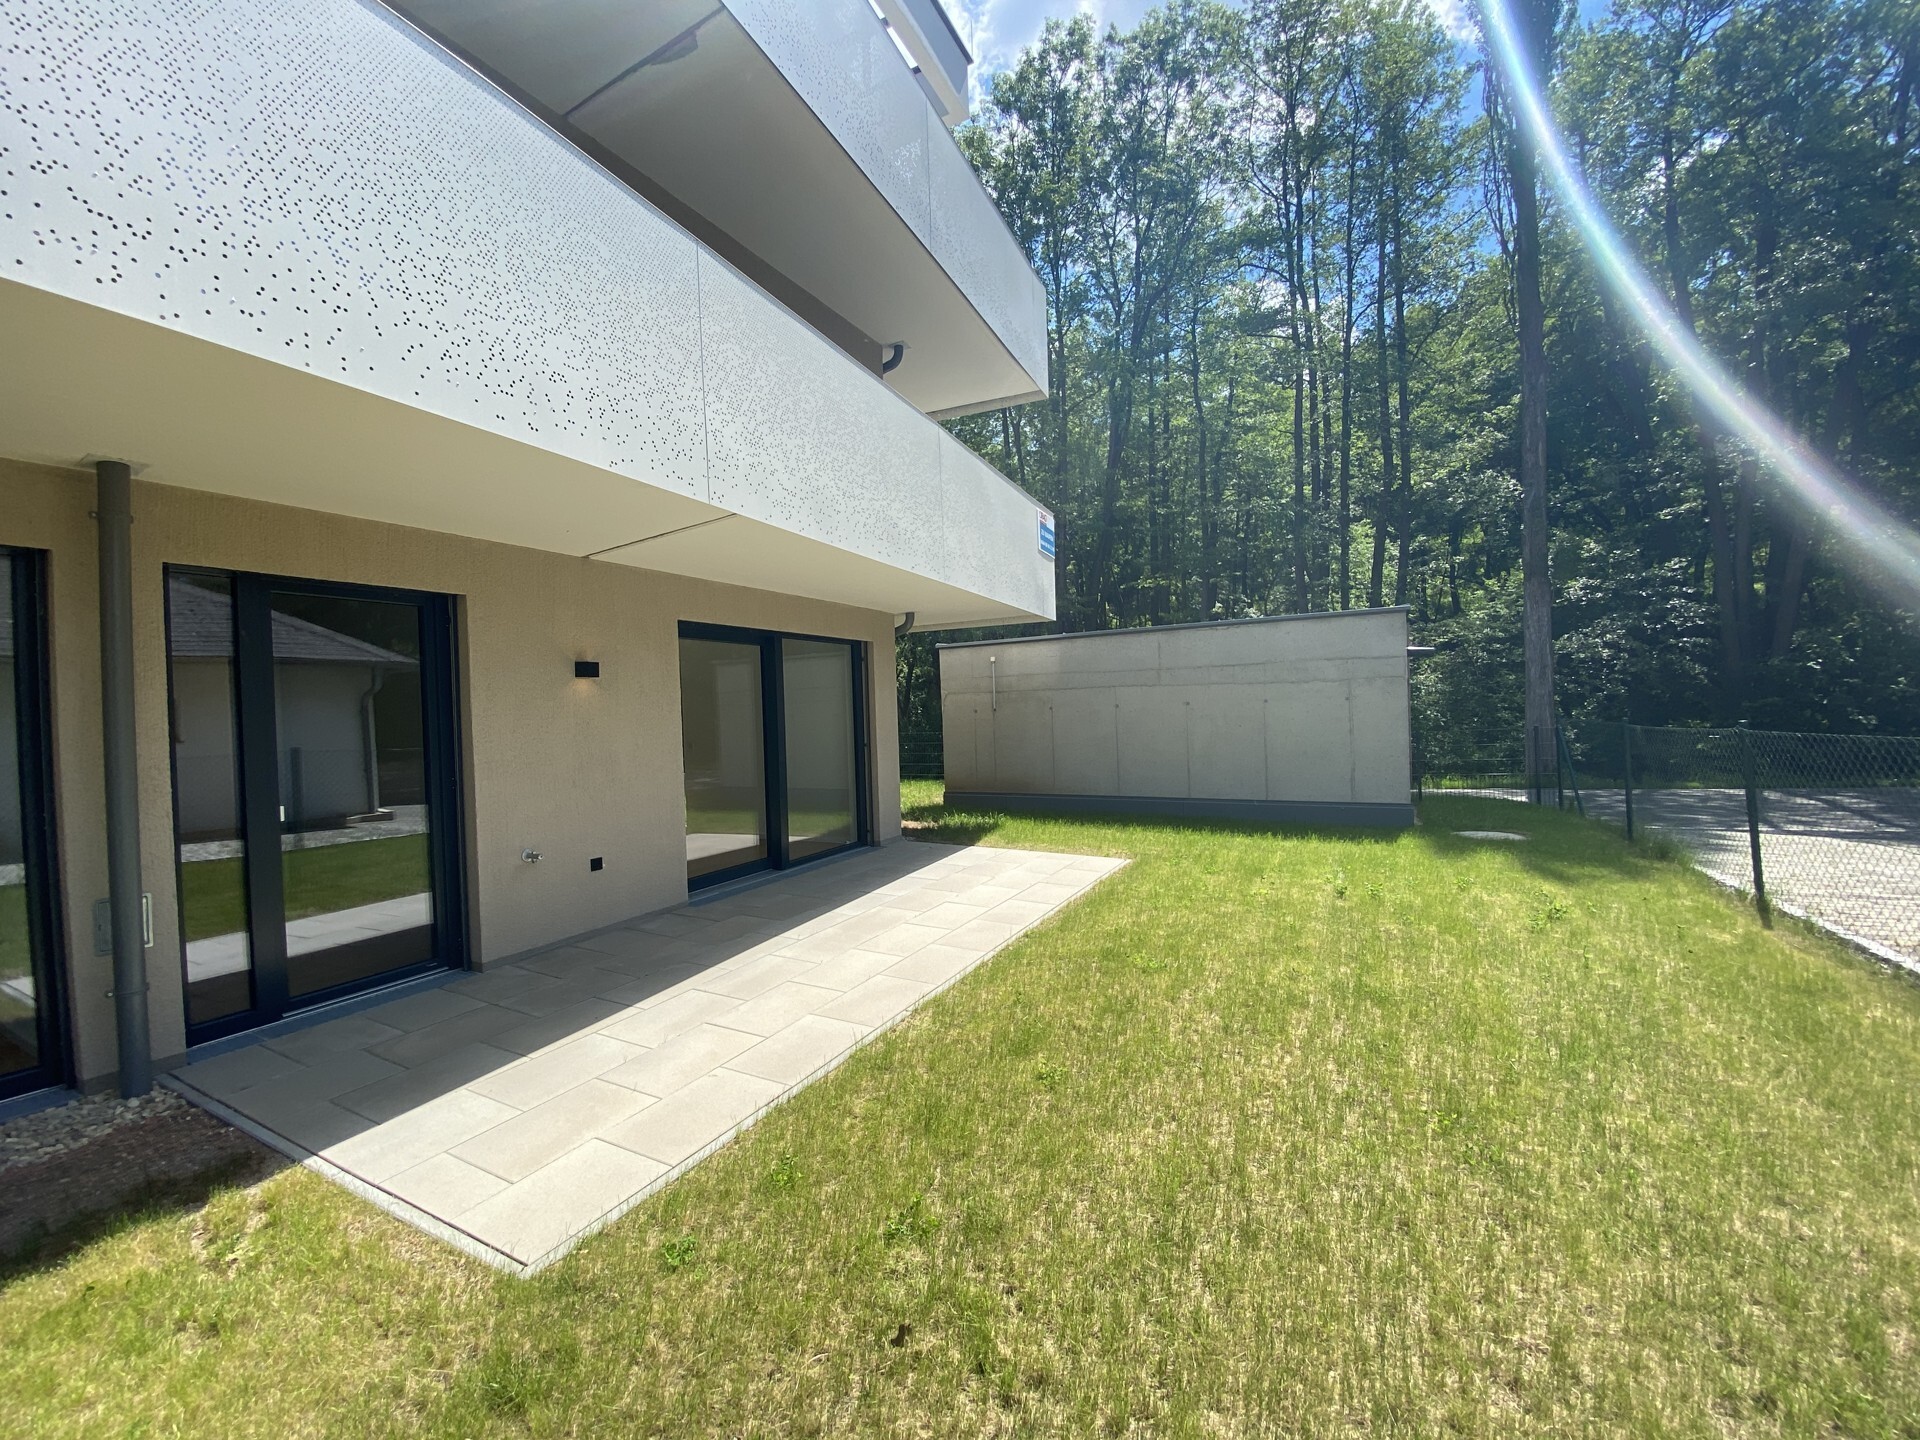 Familientraum: Luxuriöse Gartenoase mit 3 Zimmern und Terrasse - zu kaufen in 2391 Kaltenleutgeben